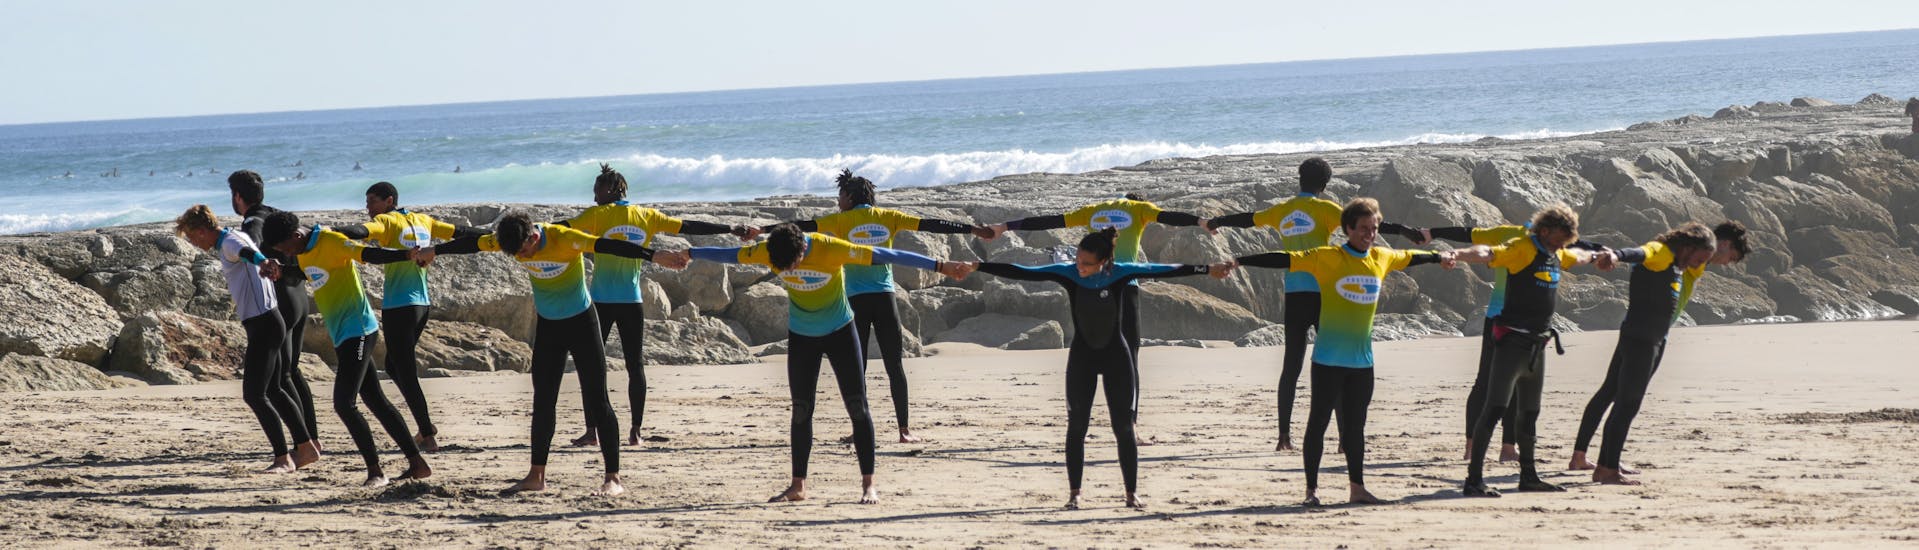 Lezioni di surf a Costa da Caparica da 6 anni per tutti i livelli.